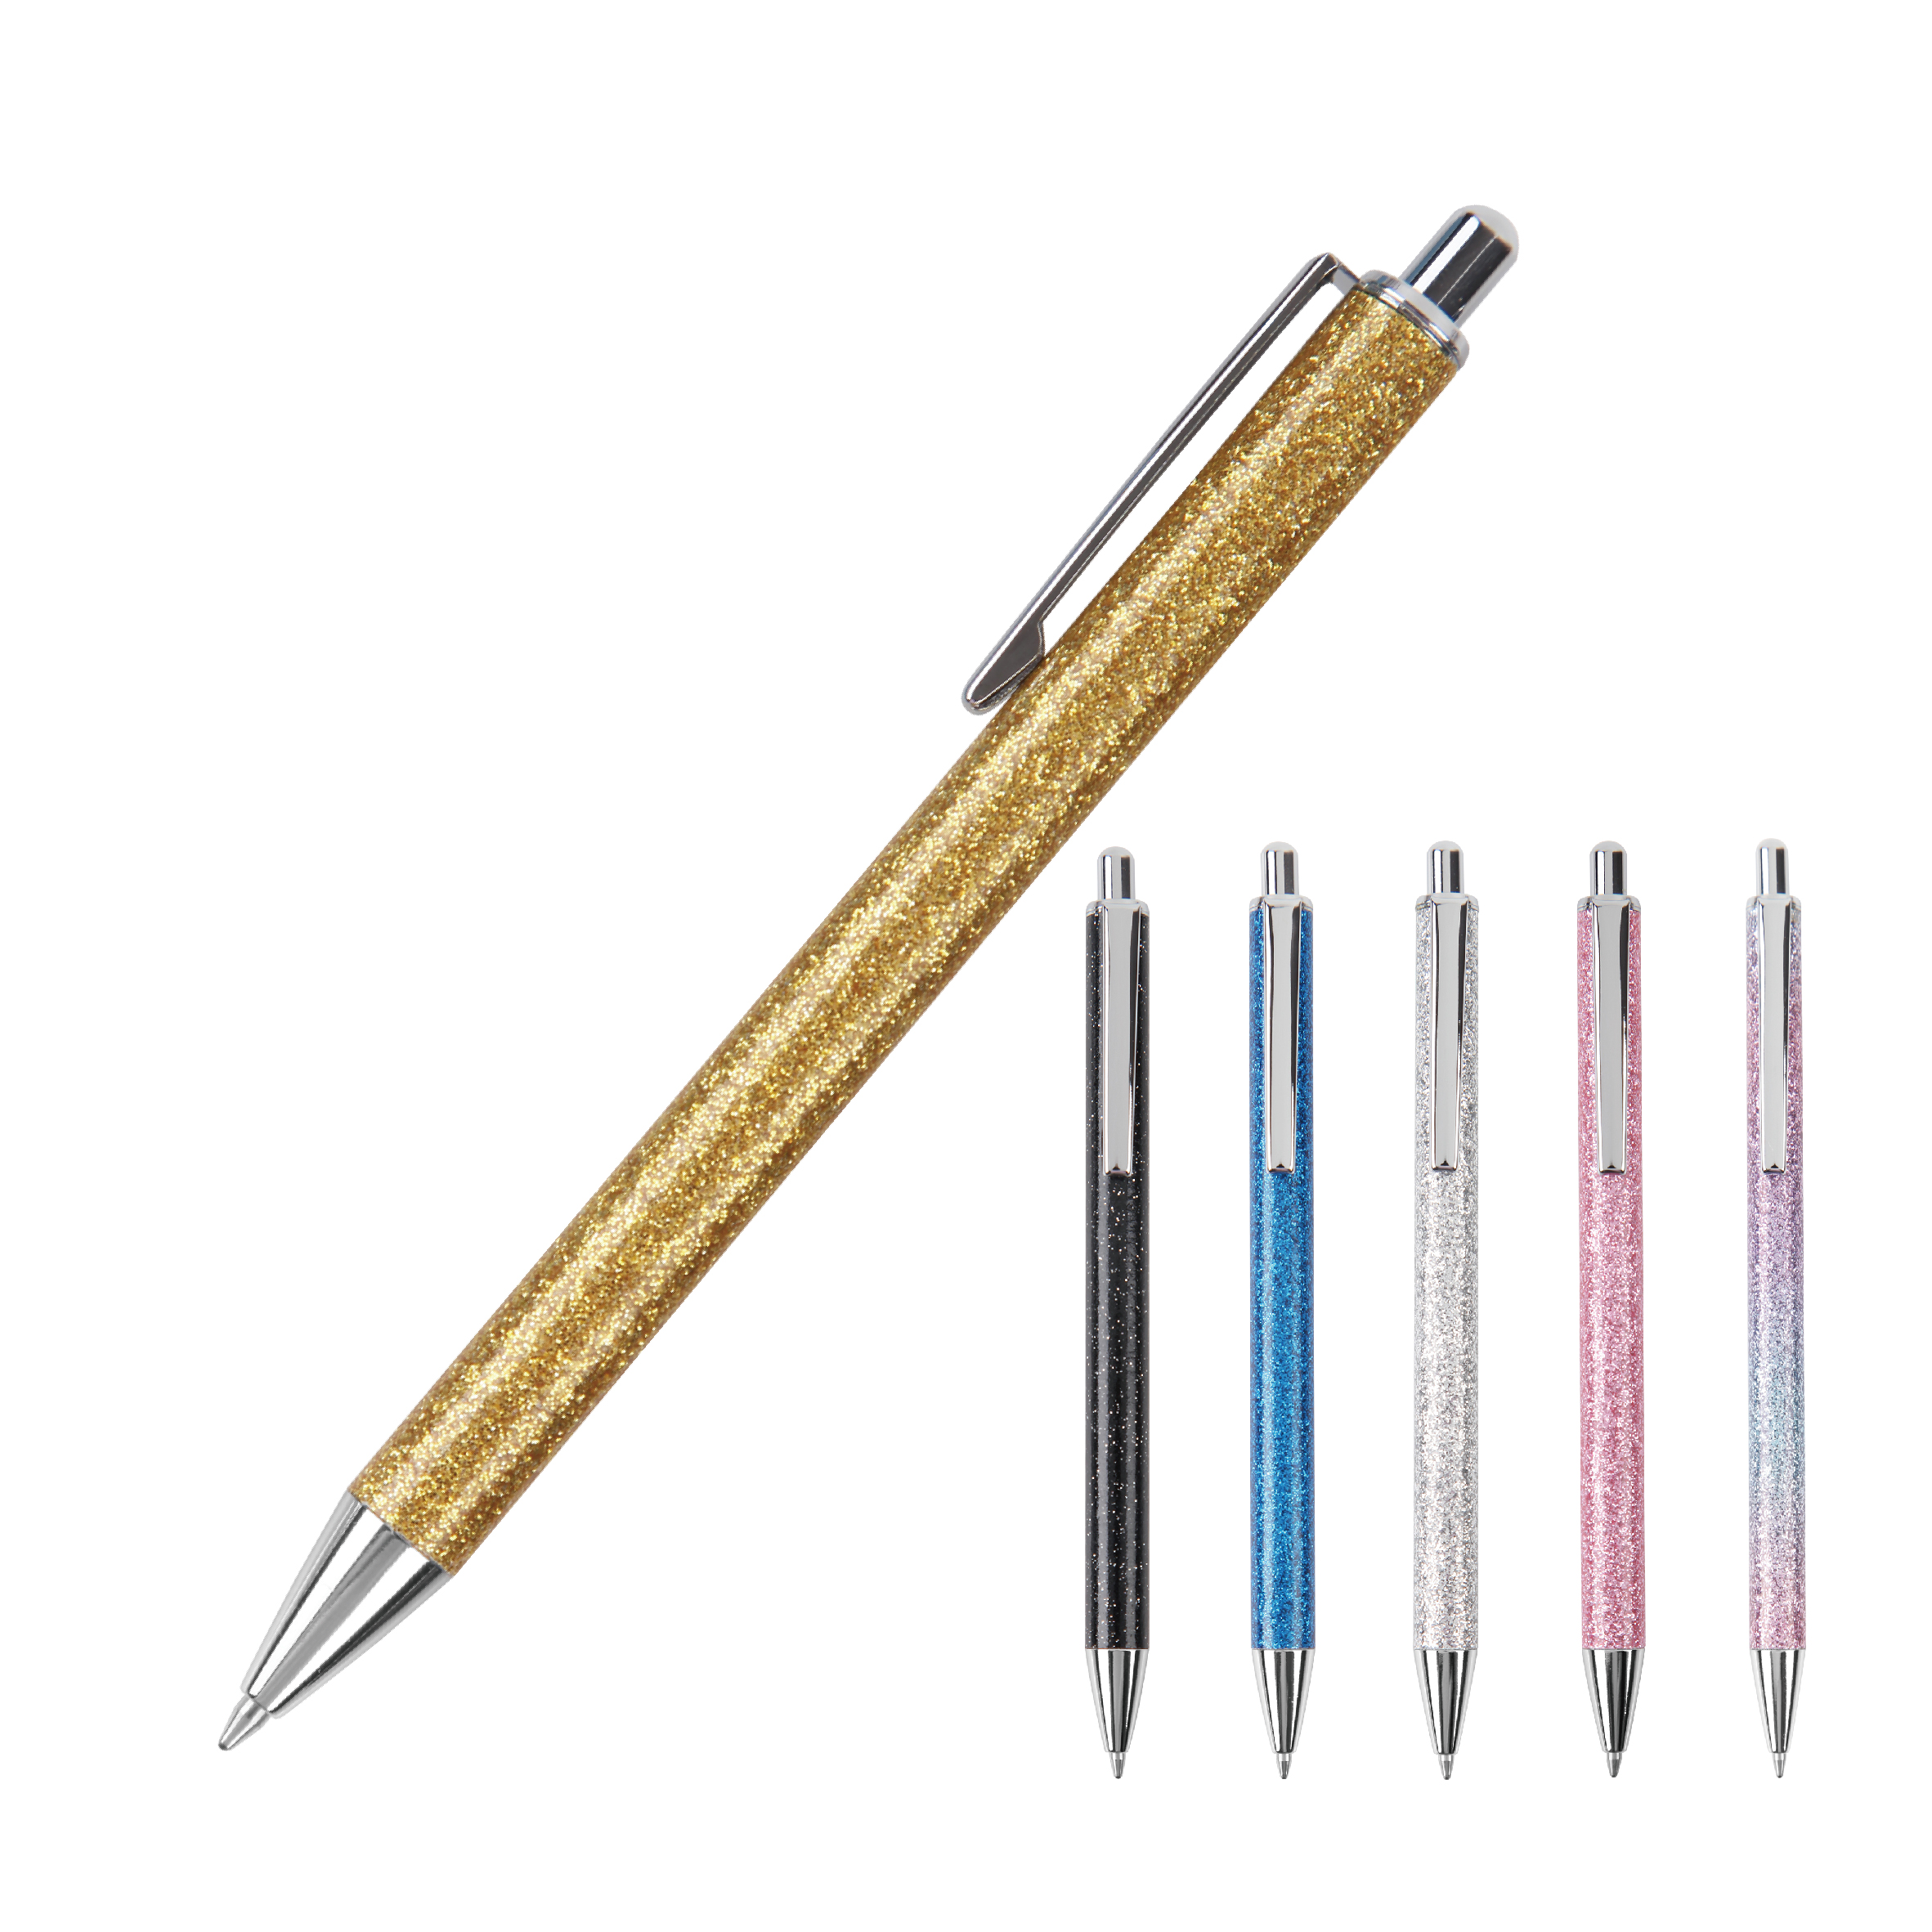 Twinkling Pink Golden Metal Retractable Ball Pen for School Office